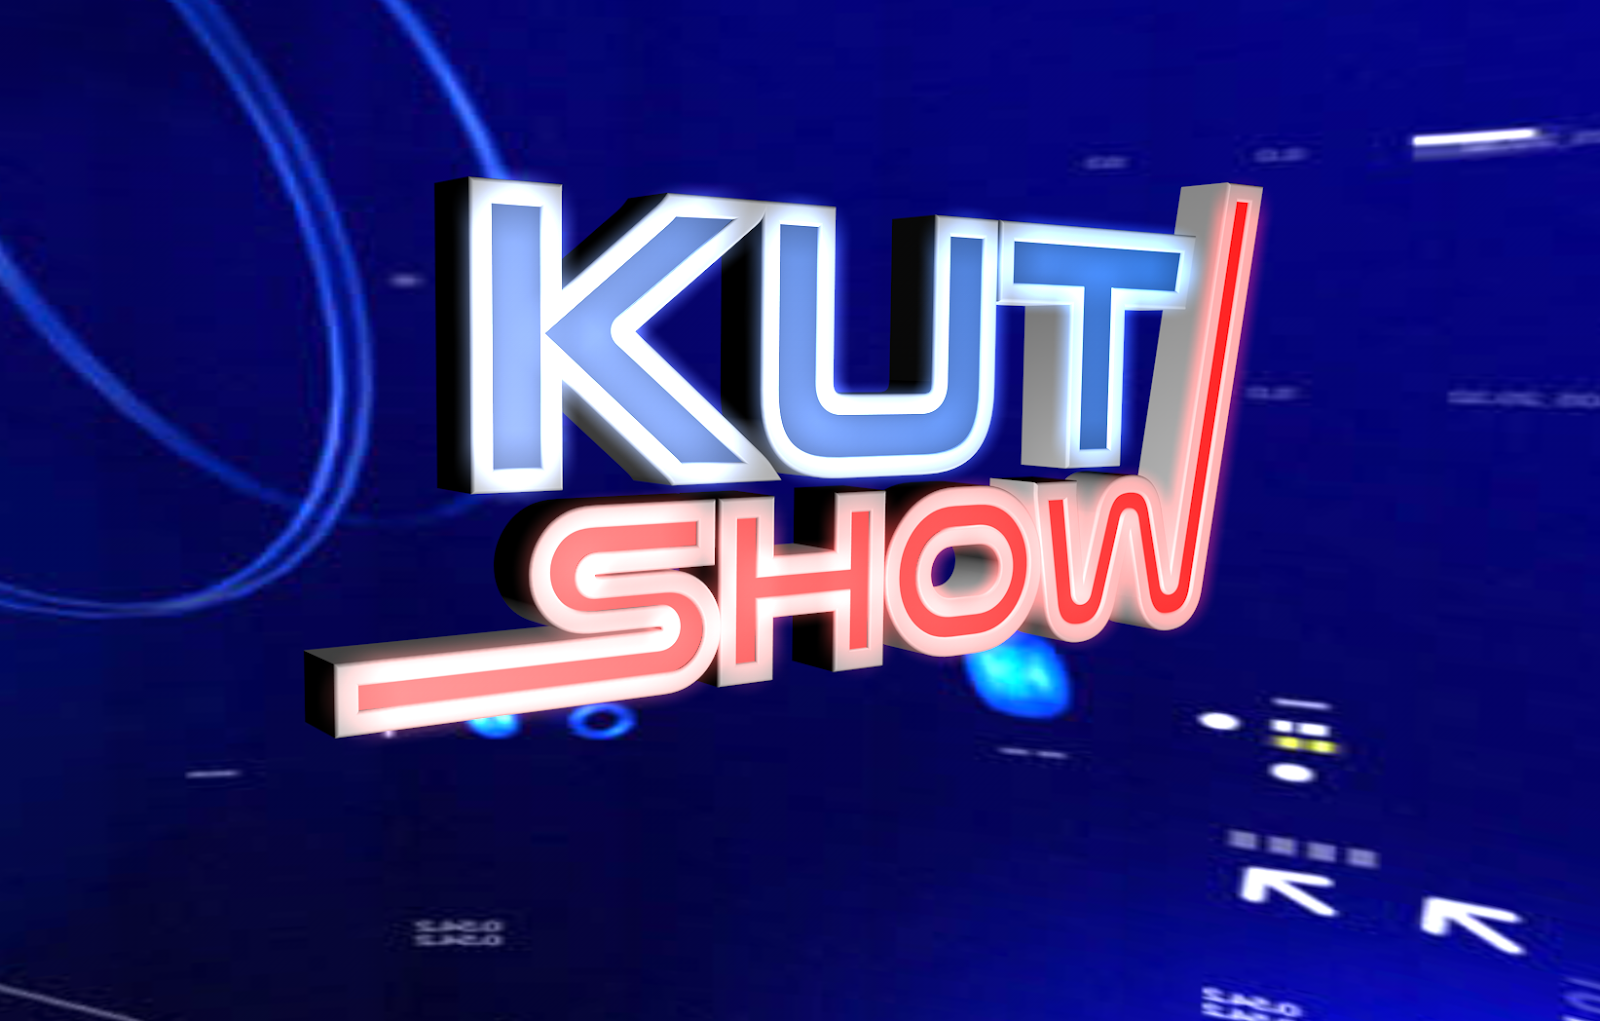 Los entresijos de hacer KUT Show en un plató de TV #kutshow 